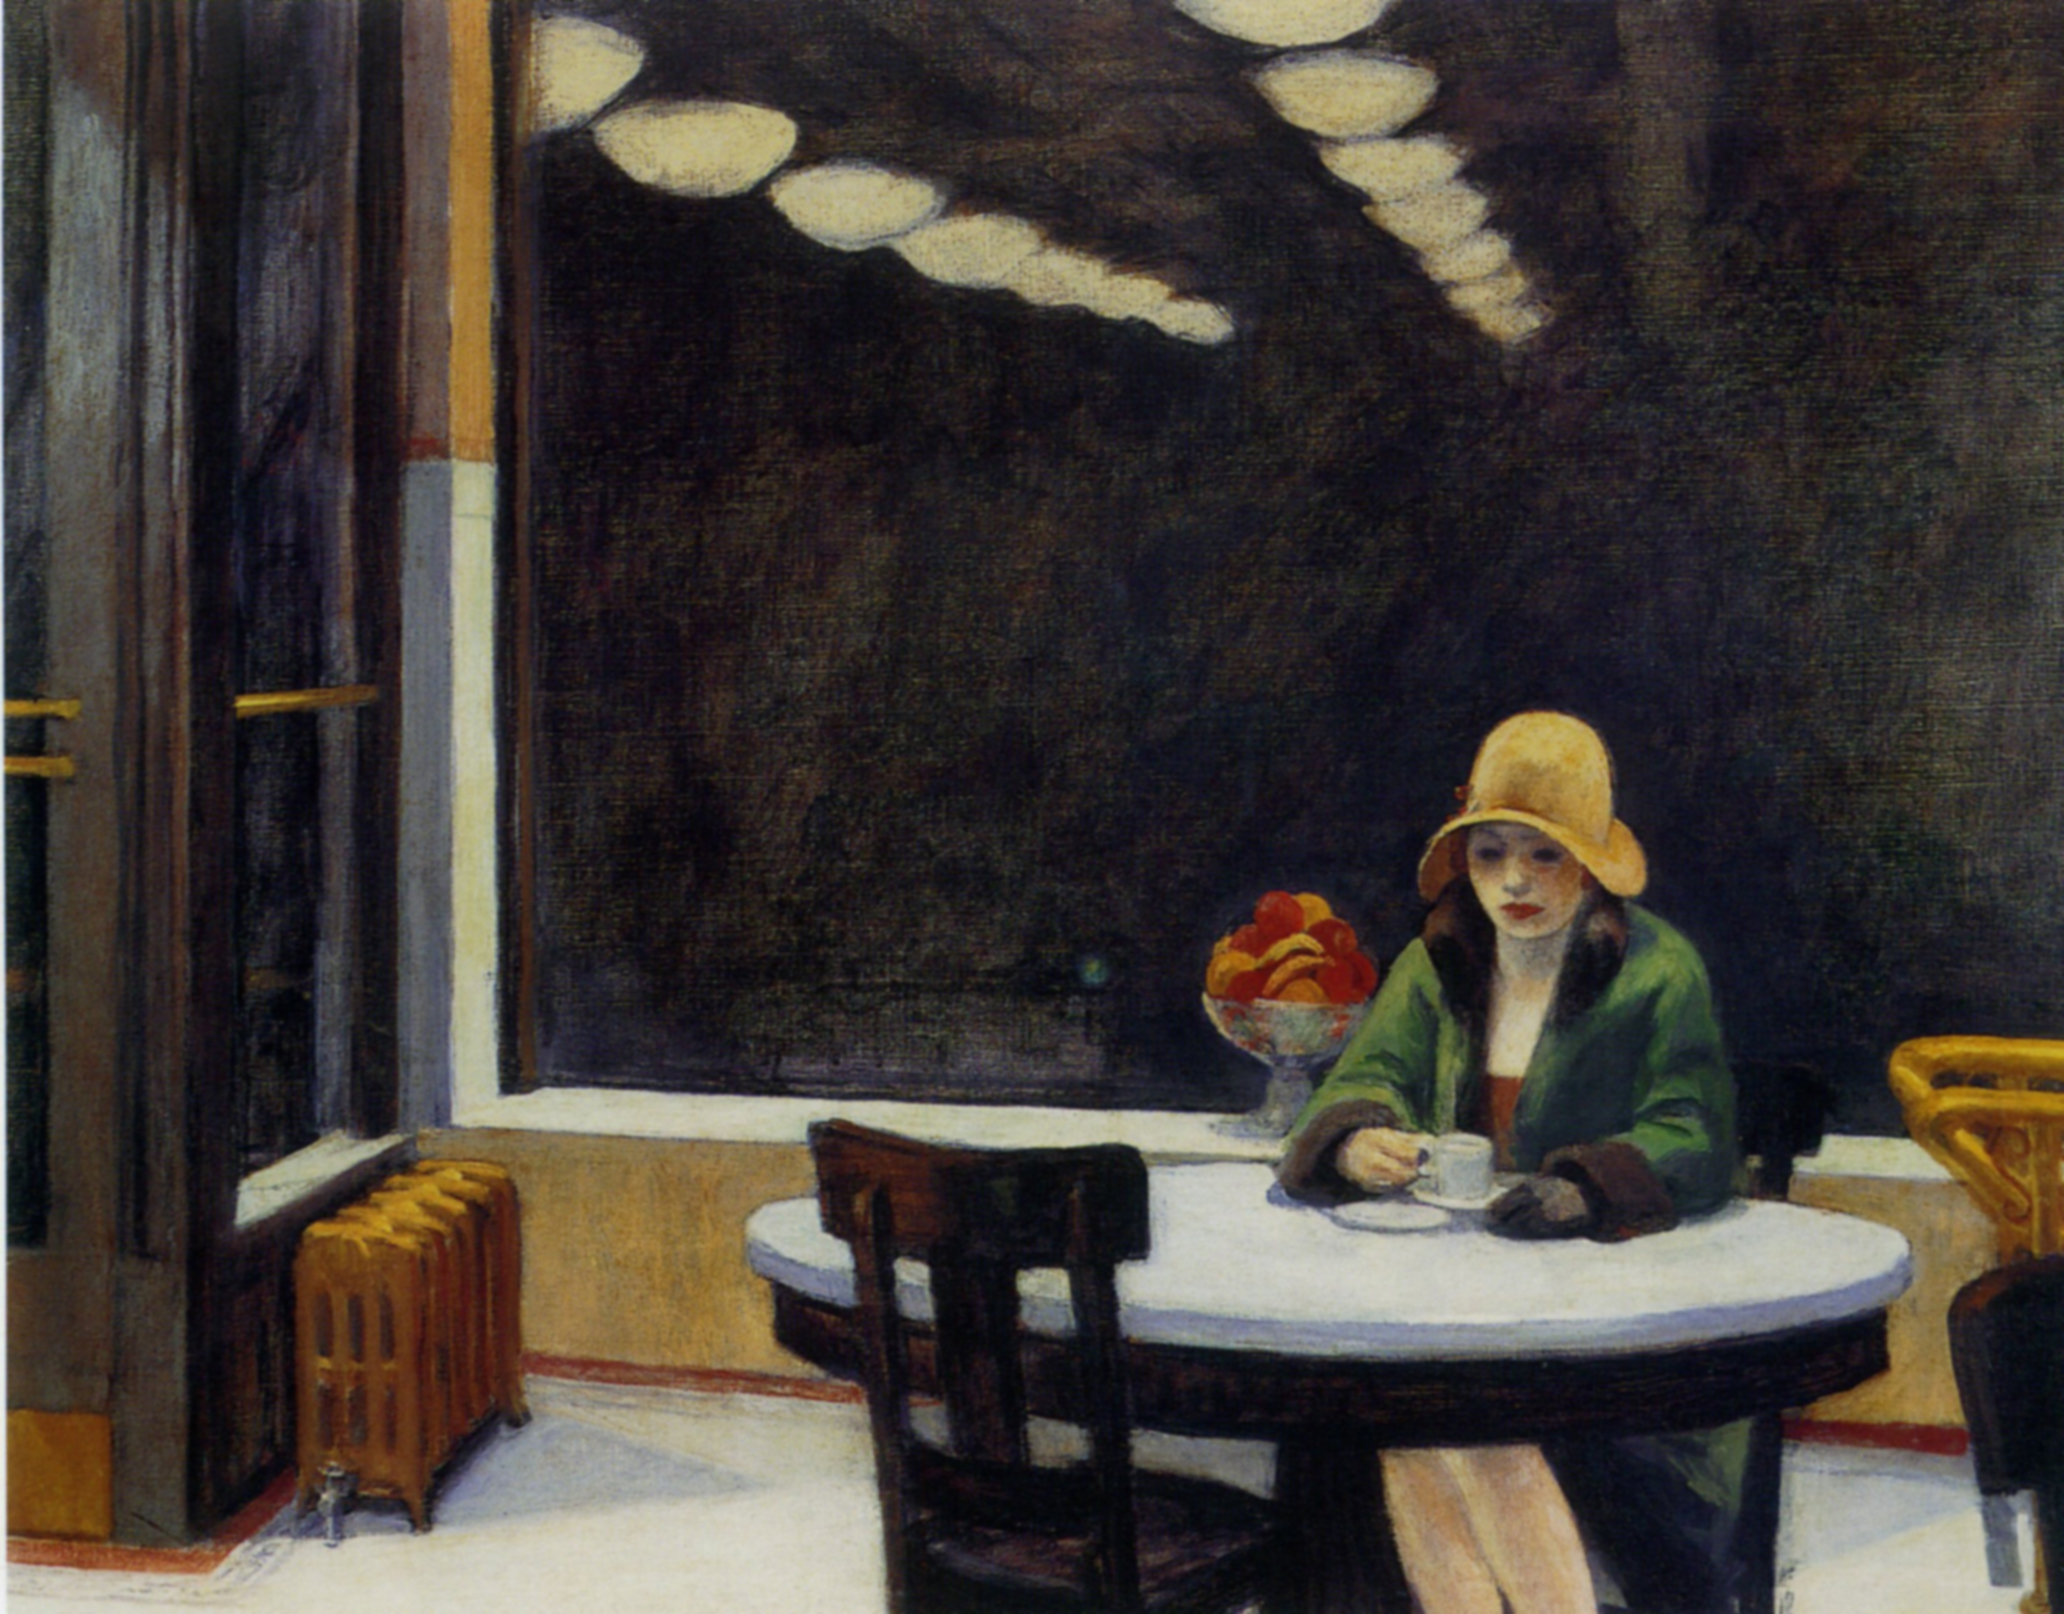 Automat by Edward Hopper - 1927 - 71.4 cm × 91.4 cm Centre d'art Des Moines